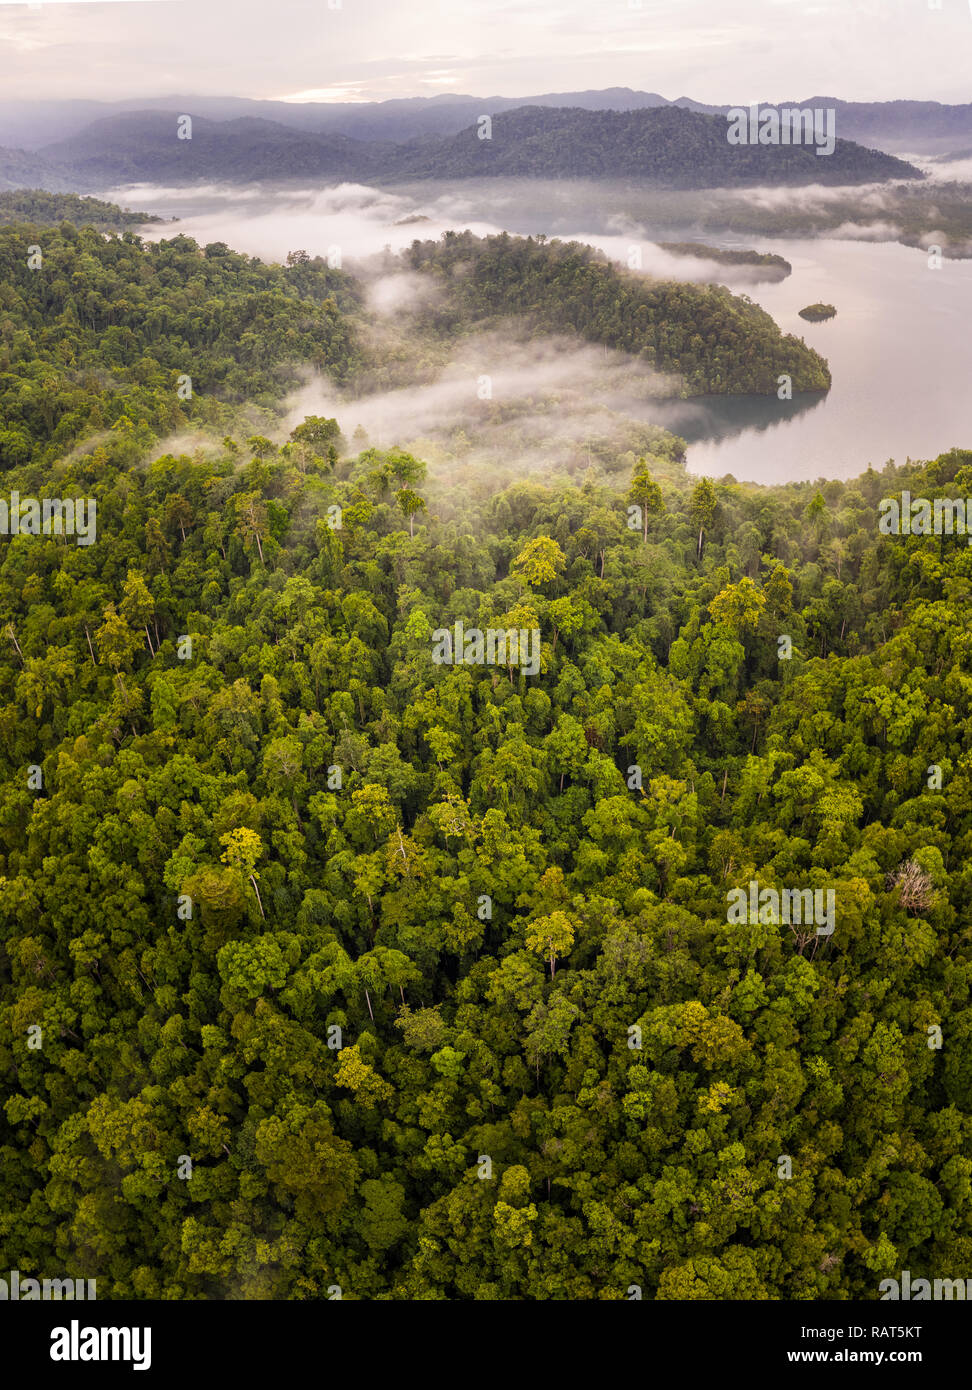 Una lussureggiante foresta pluviale copre una remota isola tropicale in Raja Ampat, Indonesia. Questa variegata regione è conosciuta come il cuore del triangolo di corallo. Foto Stock